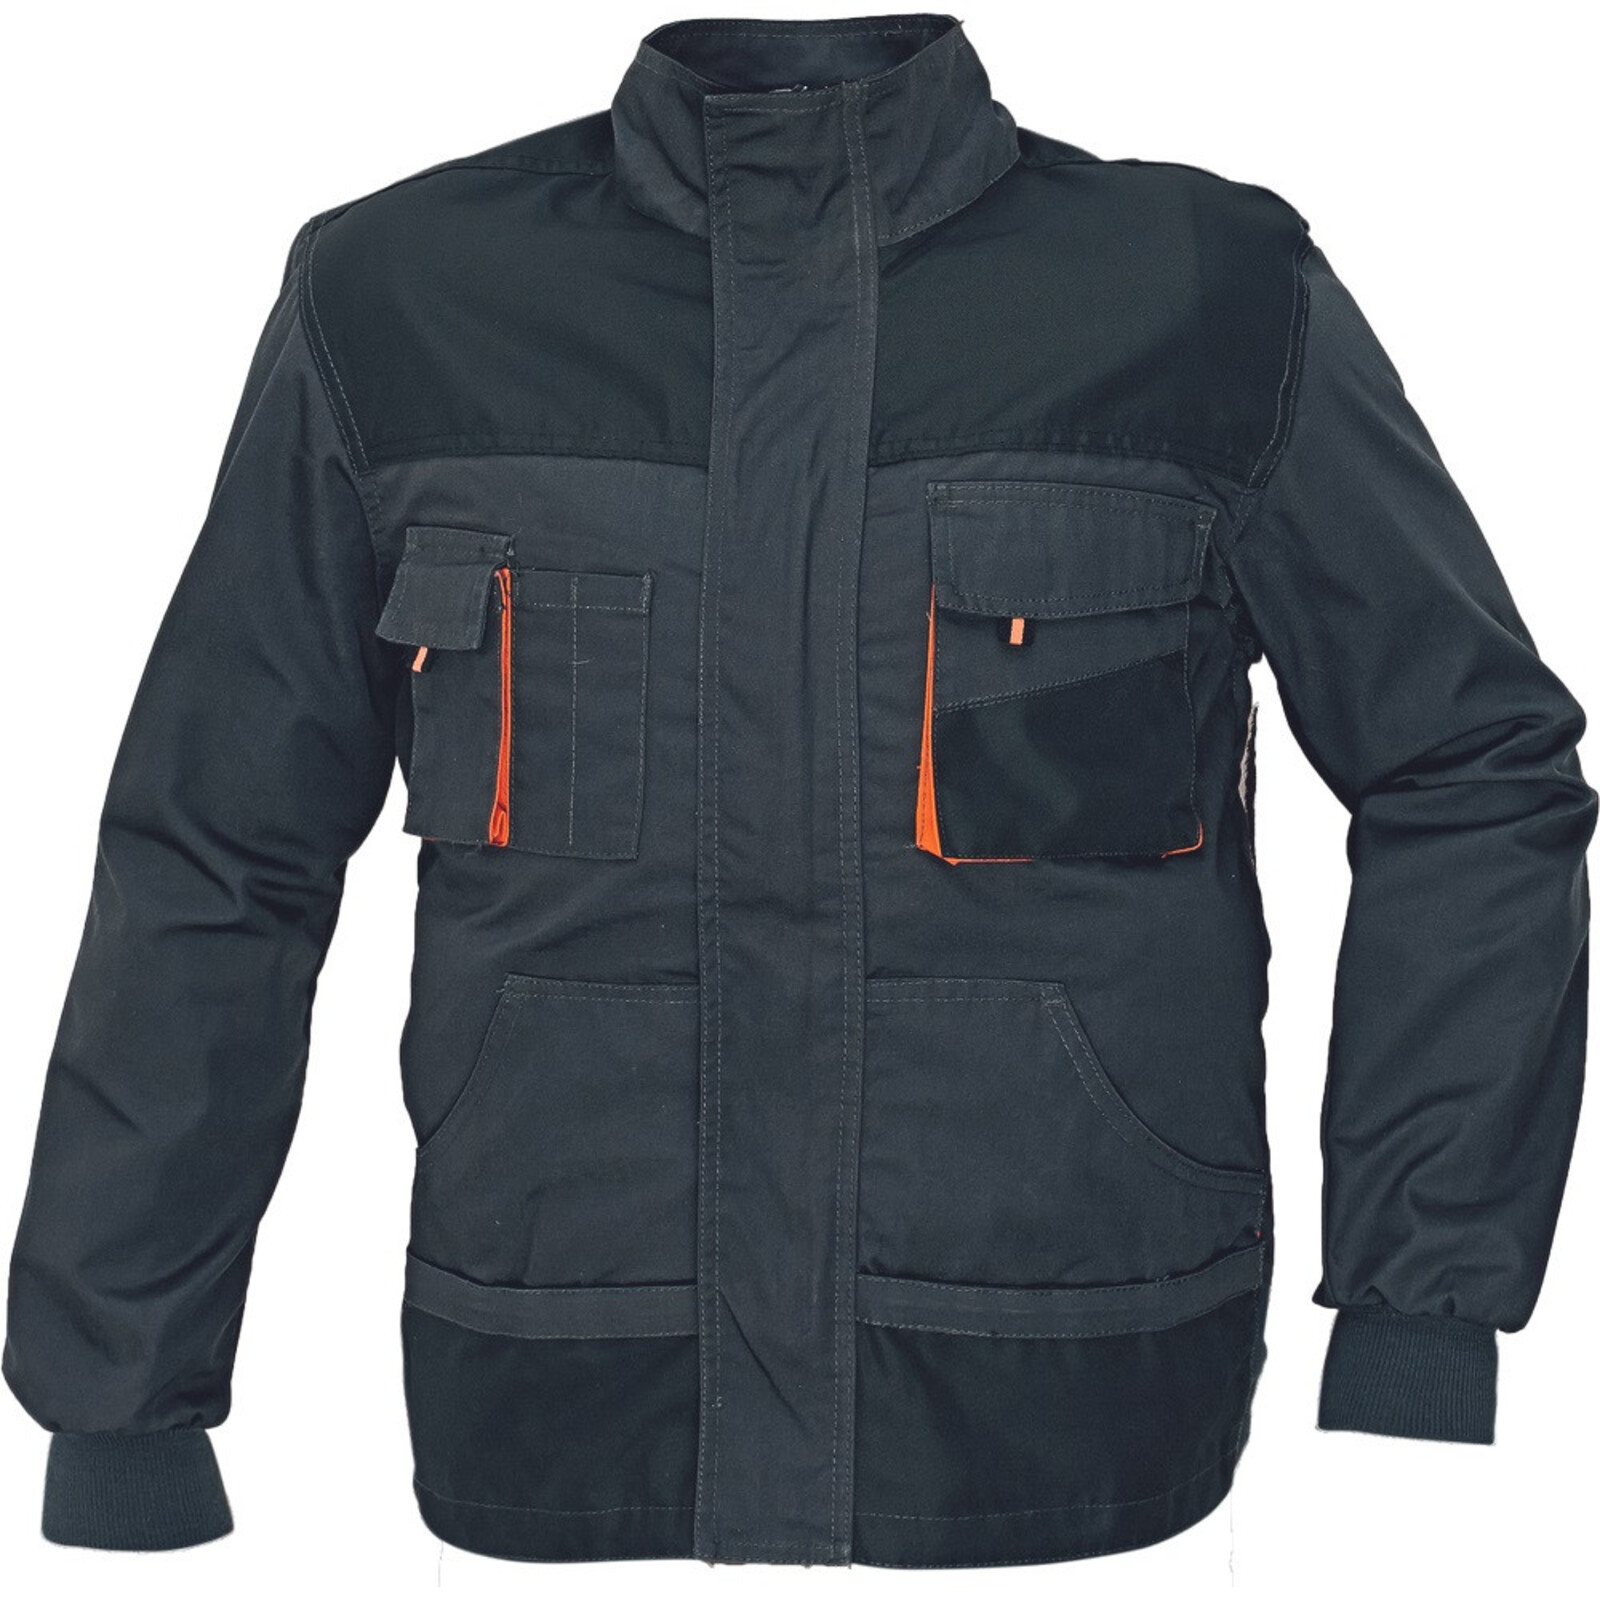 Odolná montérková bunda Emerton pánska - veľkosť: 56, farba: čierna/oranžová